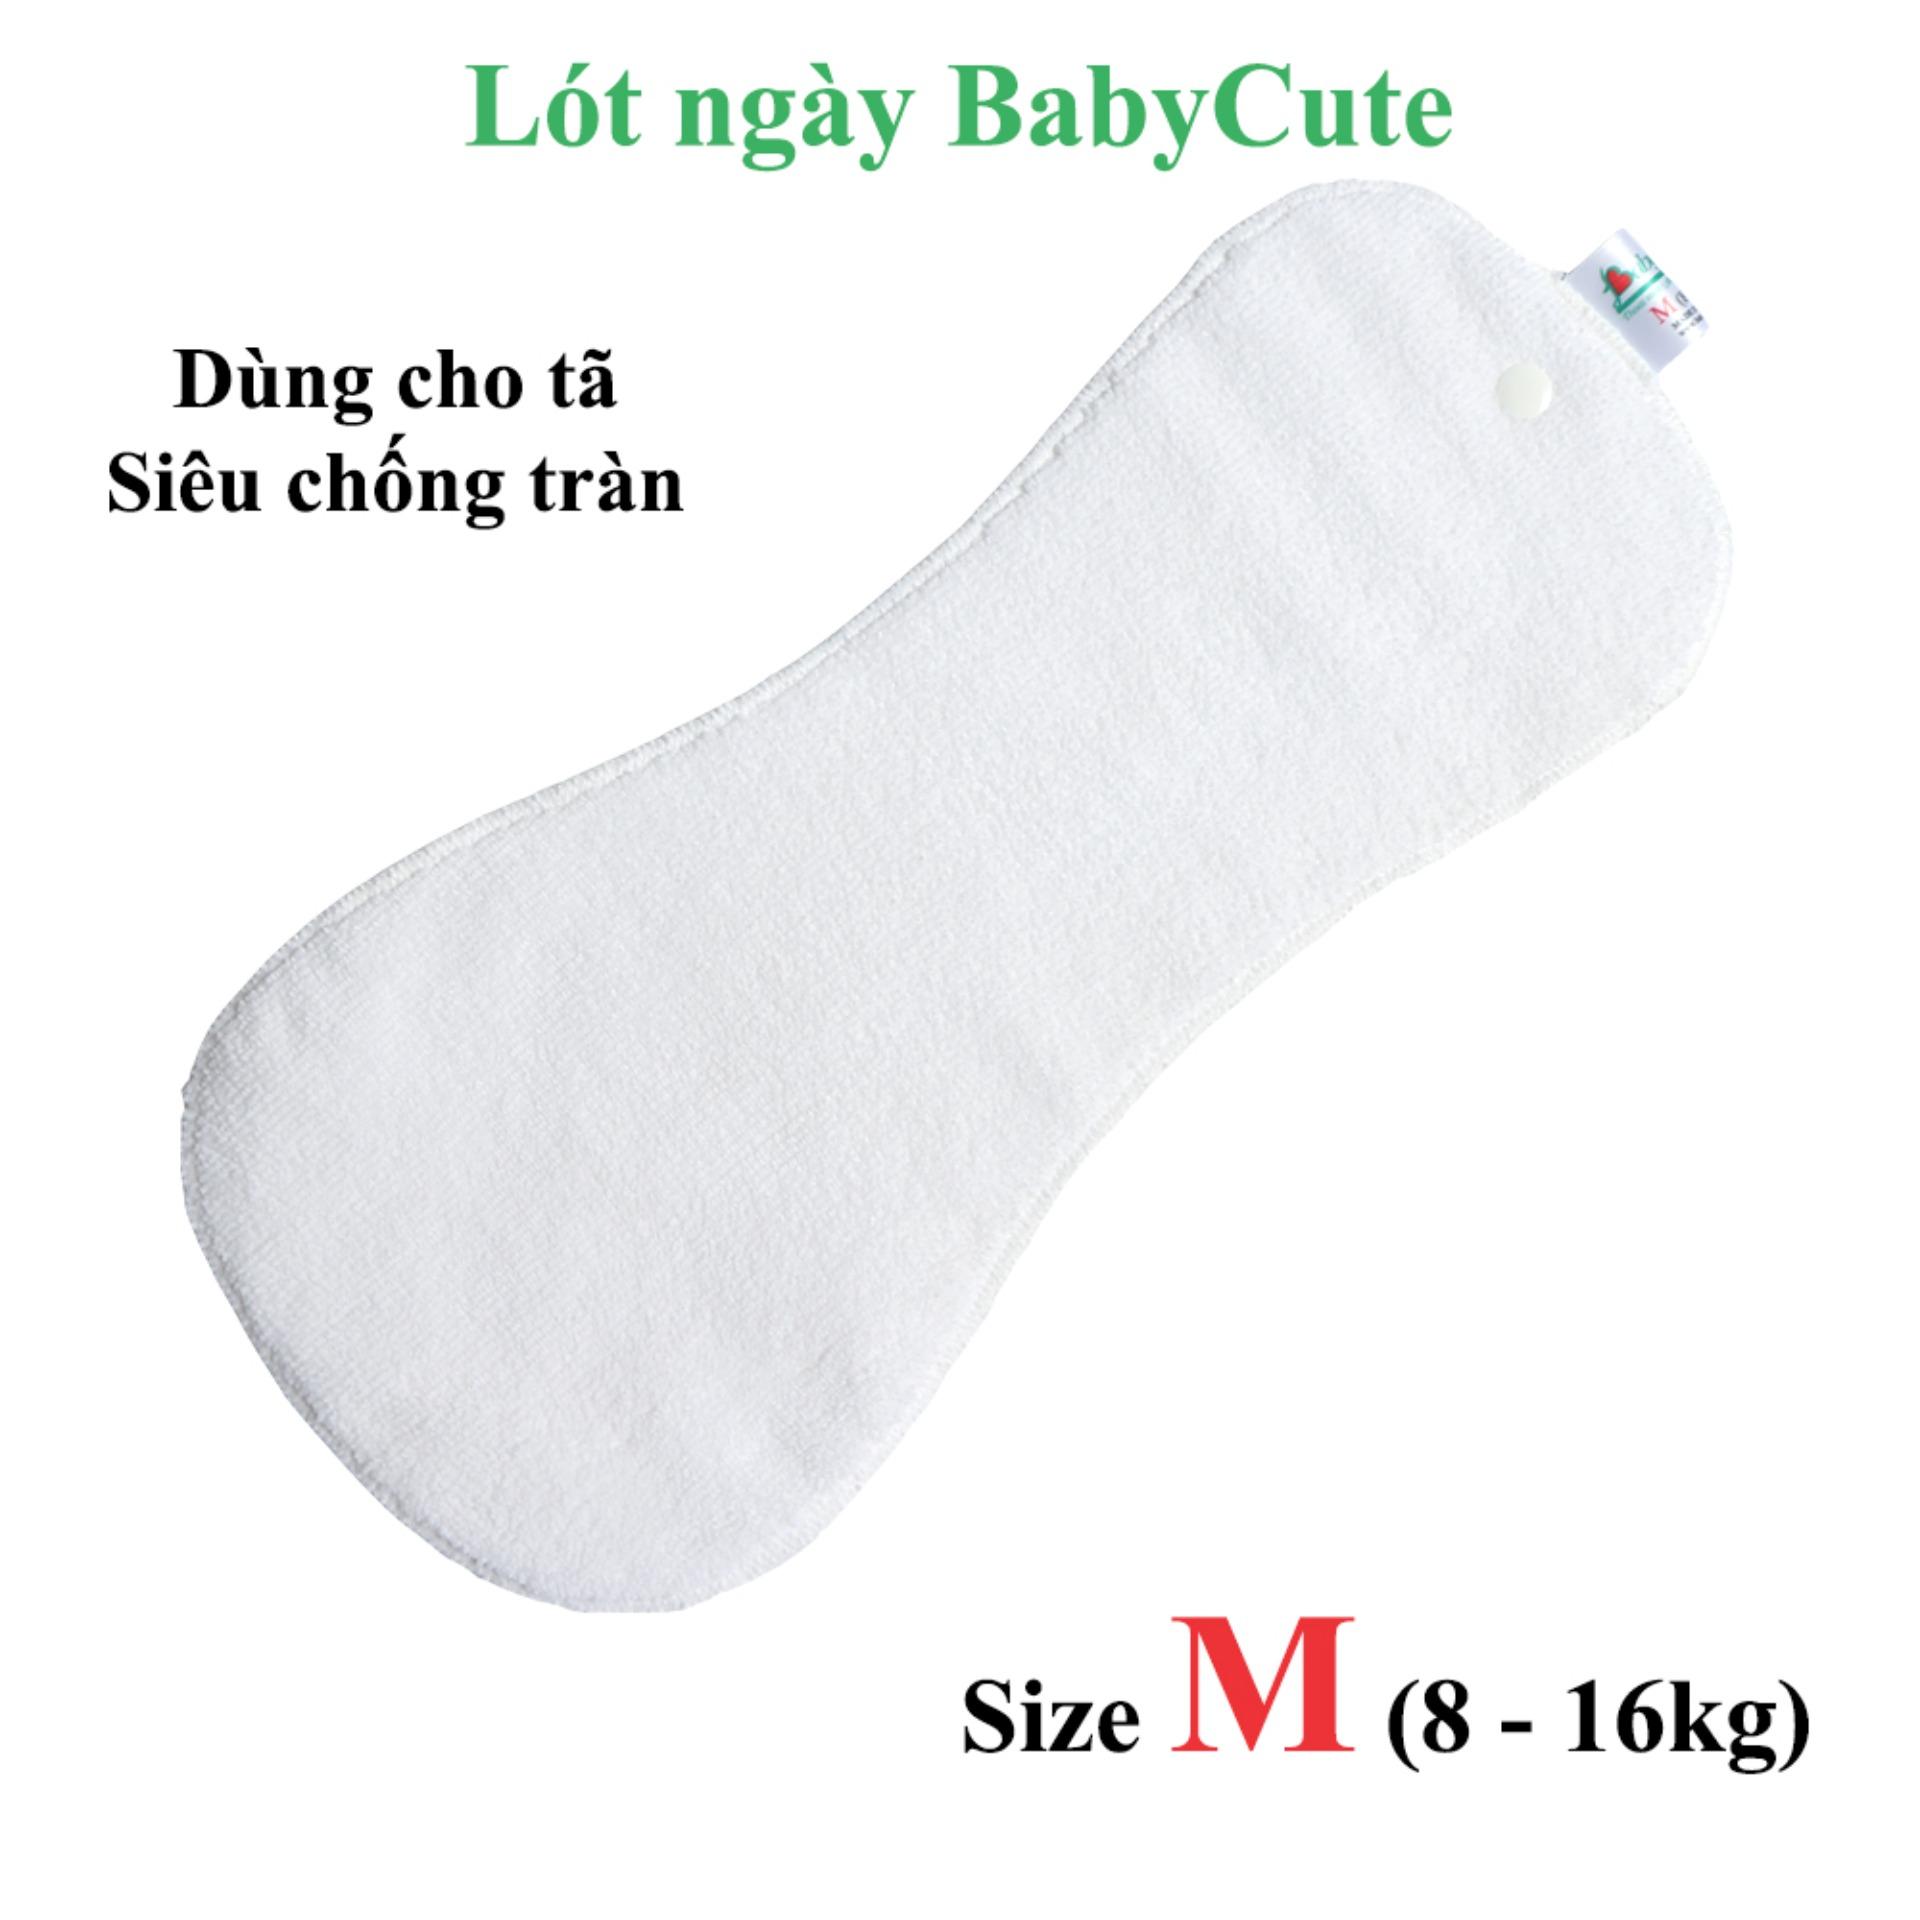 Lót tã vải Ngày BabyCute M 8-16kg